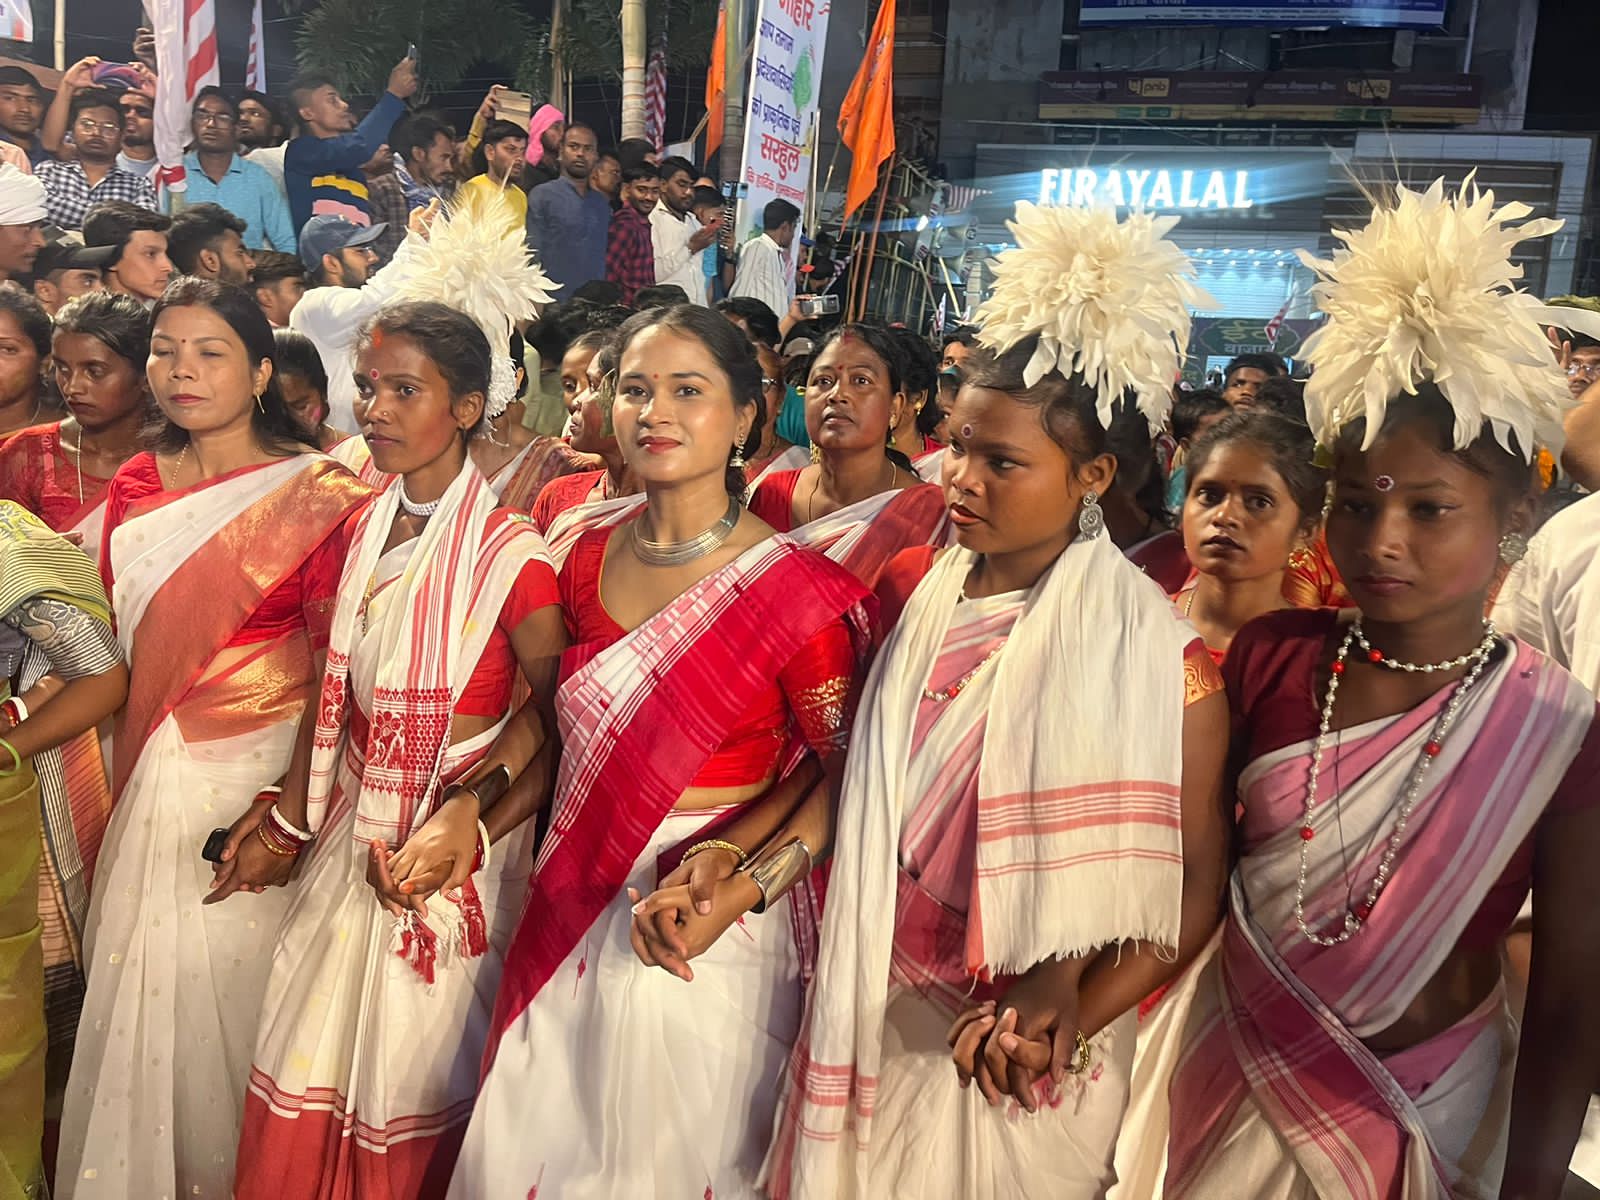 रांची में प्रकृति पर्व सरहुल की रही धूम, नागपुरी धुनों पर जमकर थिरके लोग Nature festival Sarhul celebrated in Ranchi, people danced to Nagpuri tunes 